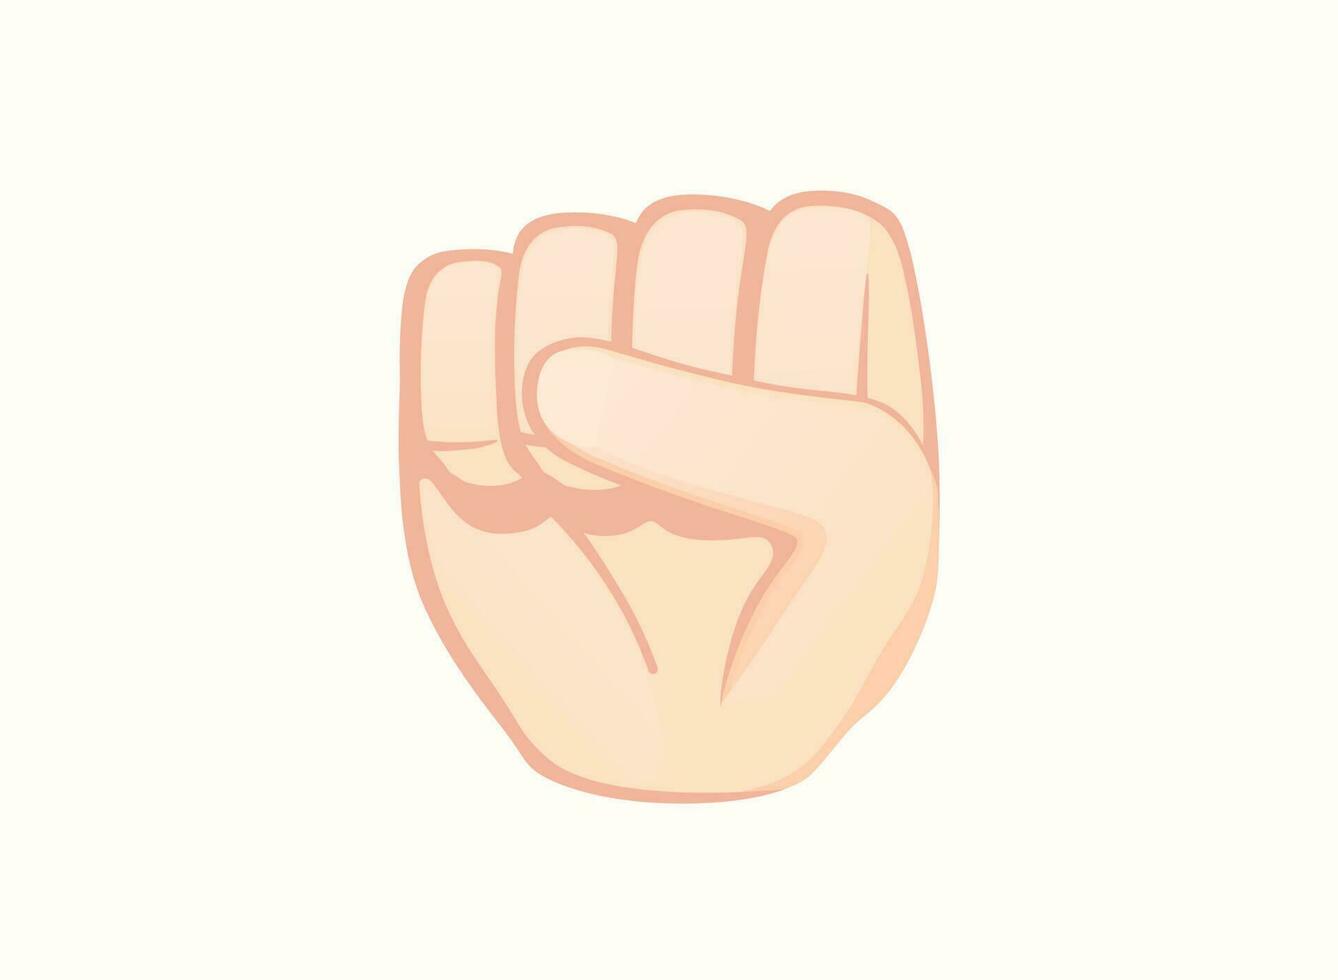 Raised fist icon. Hand gesture emoji vector illustration.